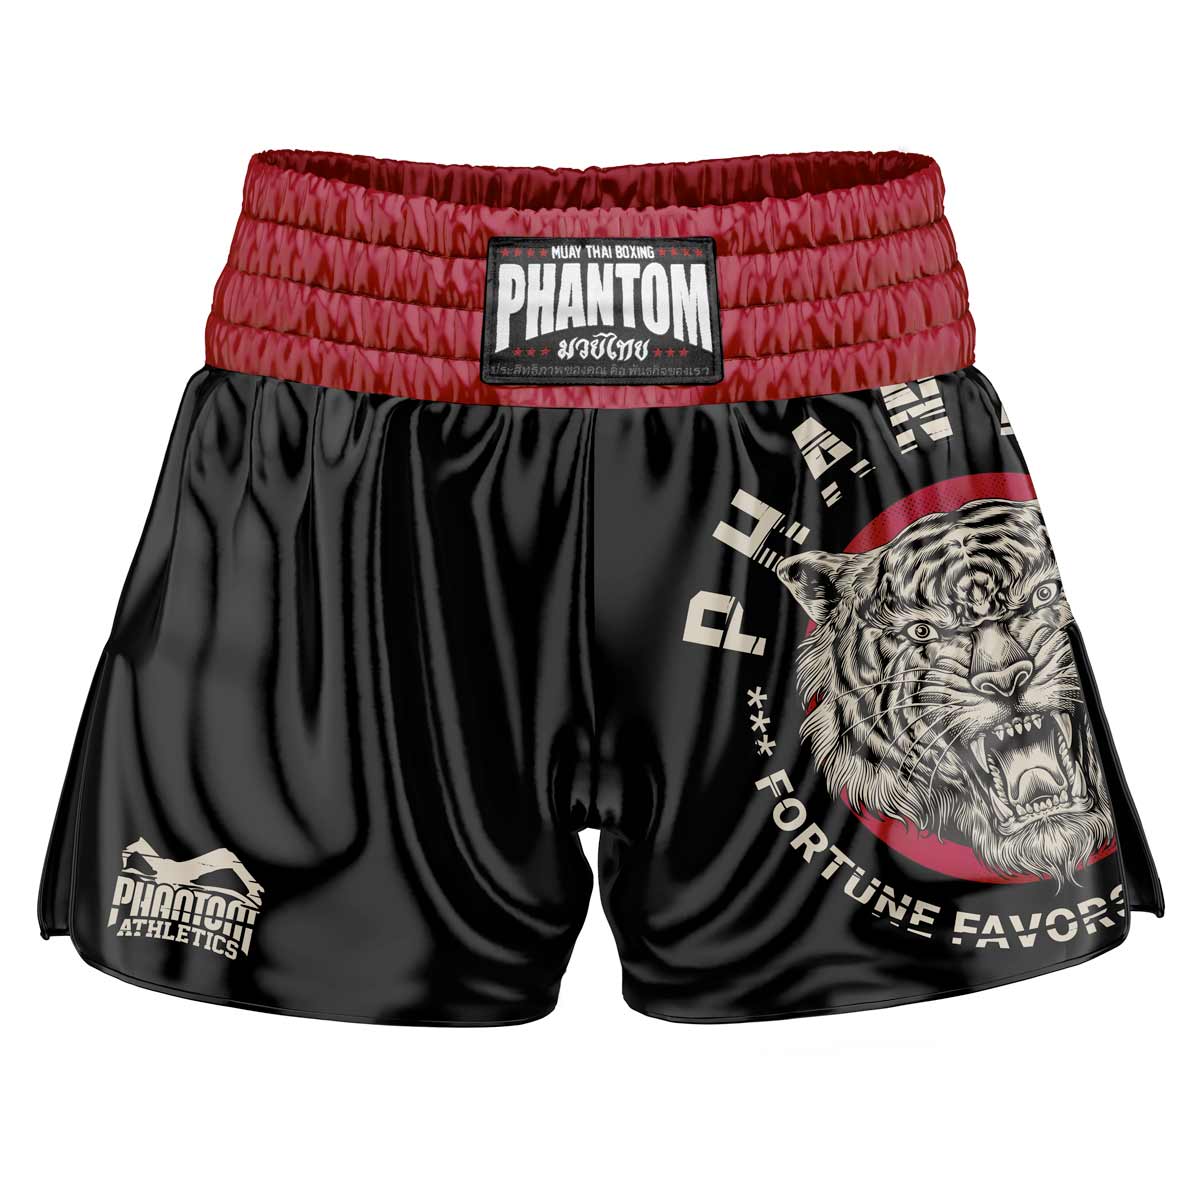 Phantom Muay Thai kratke hlače u crnoj boji. Satenska tkanina stare škole i naš popularni Tiger Unit dizajn daju vam izvorni osjećaj Tajlanda. U uobičajenoj kvaliteti Phantom Athletics . Idealan za vaš trening i natjecanje u tajlandskom boksu.